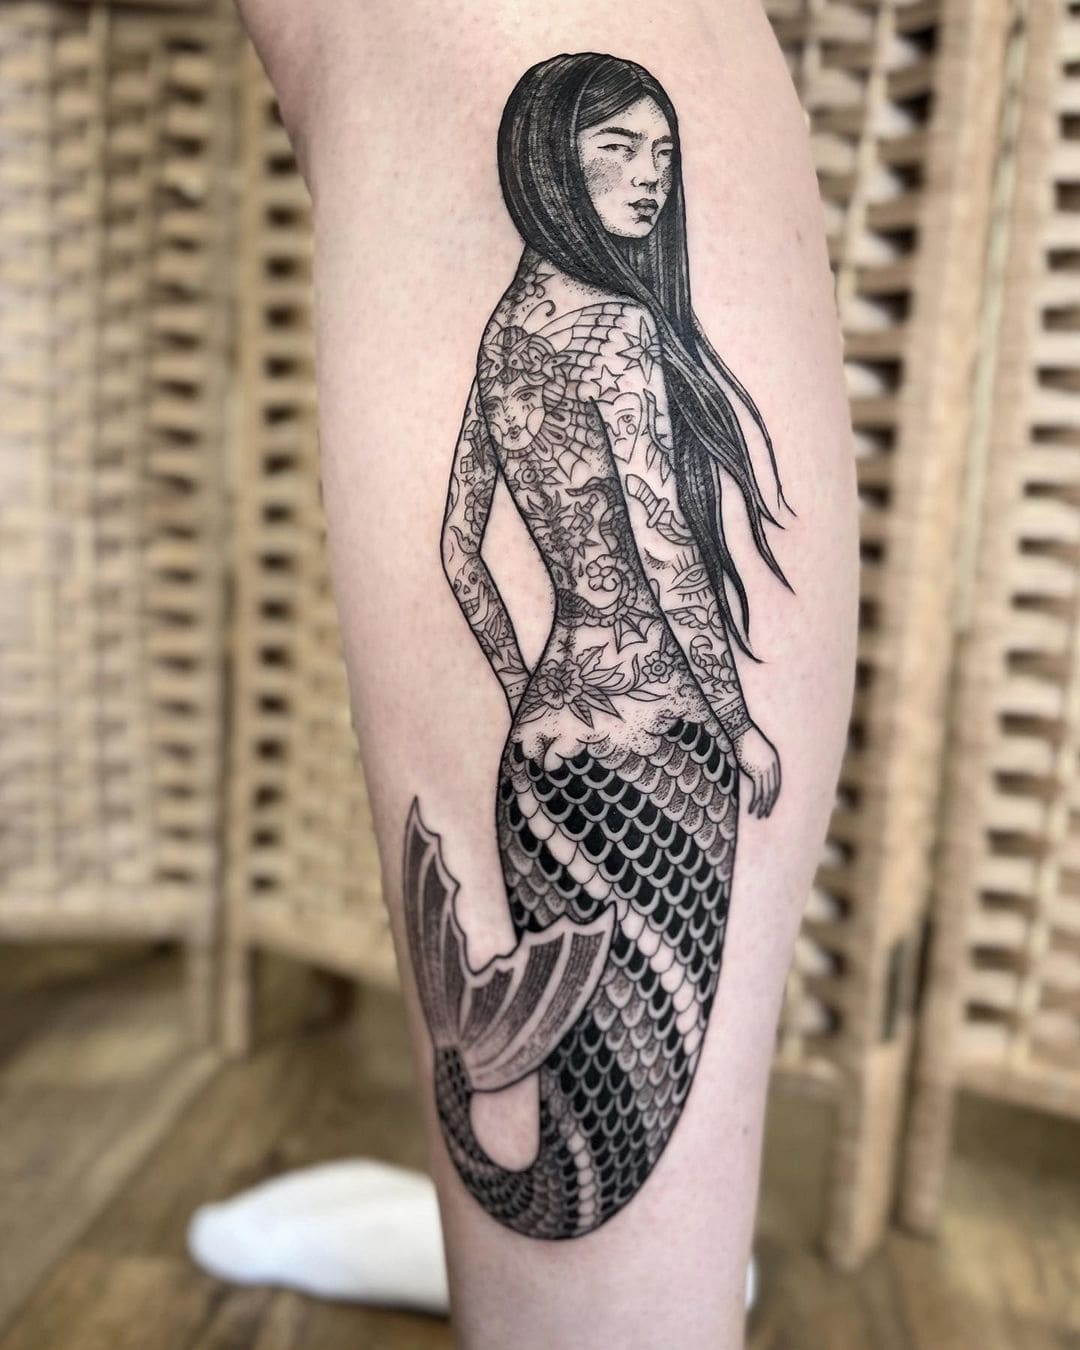 Mermaid Skeleton Tail Arm tattoo - Best Tattoo Ideas Gallery